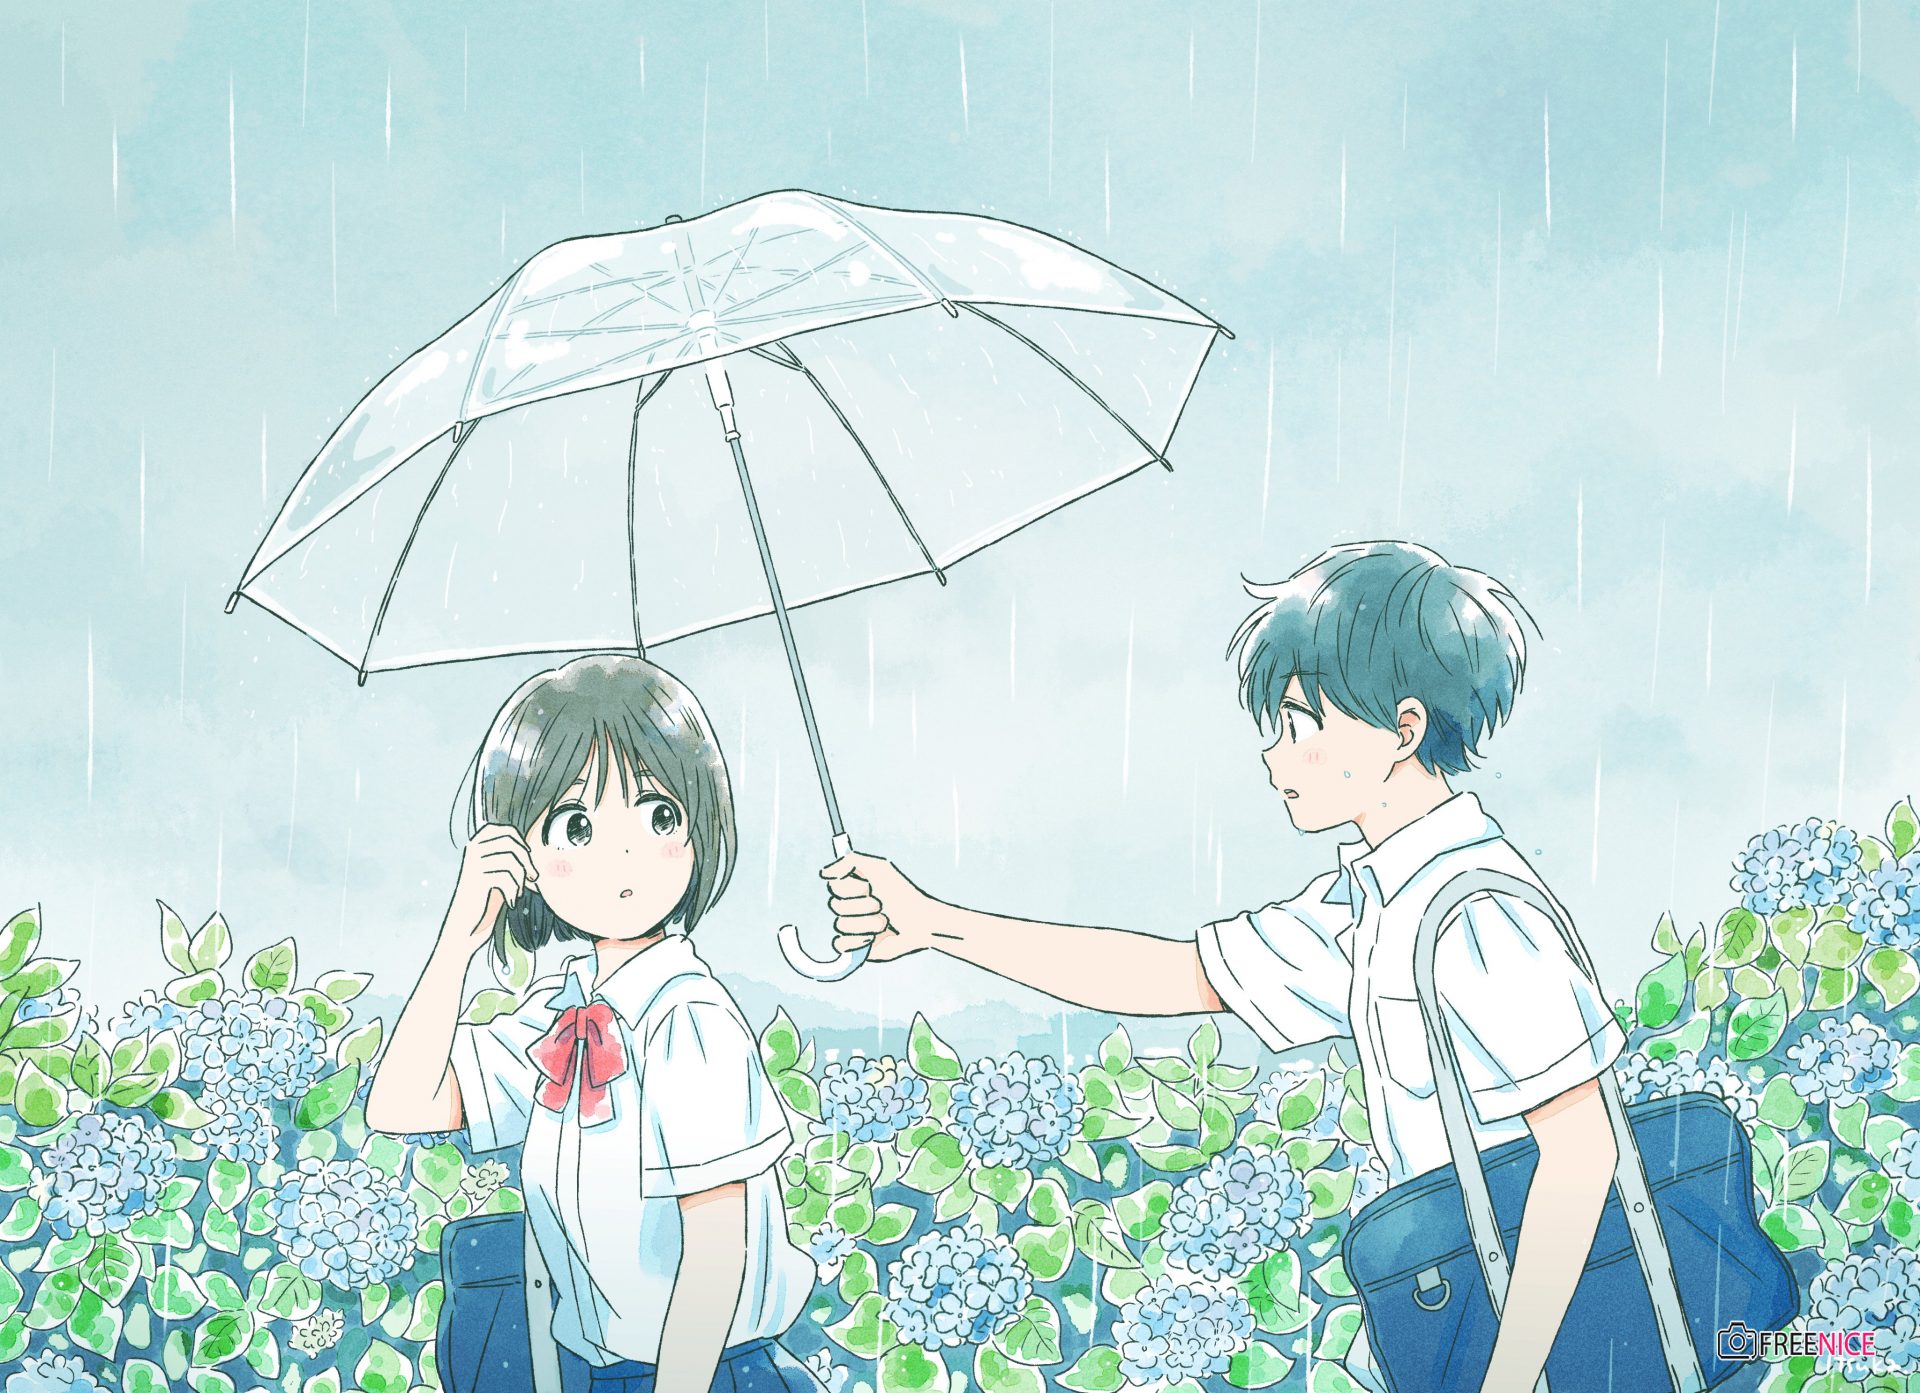 Yêu đơn phương anime con trai: Tình yêu đơn phương là chủ đề thường xuyên xuất hiện trong các bộ phim anime. Một lần nữa, chúng ta lại được đắm mình trong một câu chuyện đầy cảm xúc và xem con trai bị người khác ghen tỵ vì tình cảm của mình.